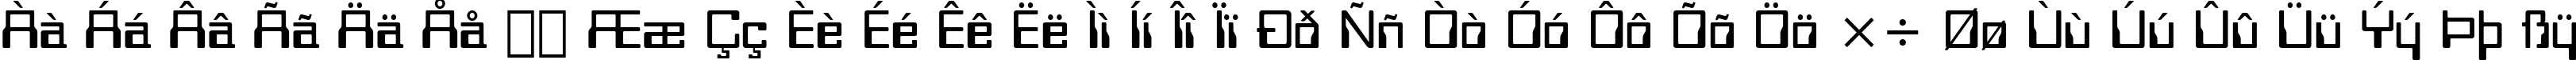 Пример написания русского алфавита шрифтом Orbit-B BT